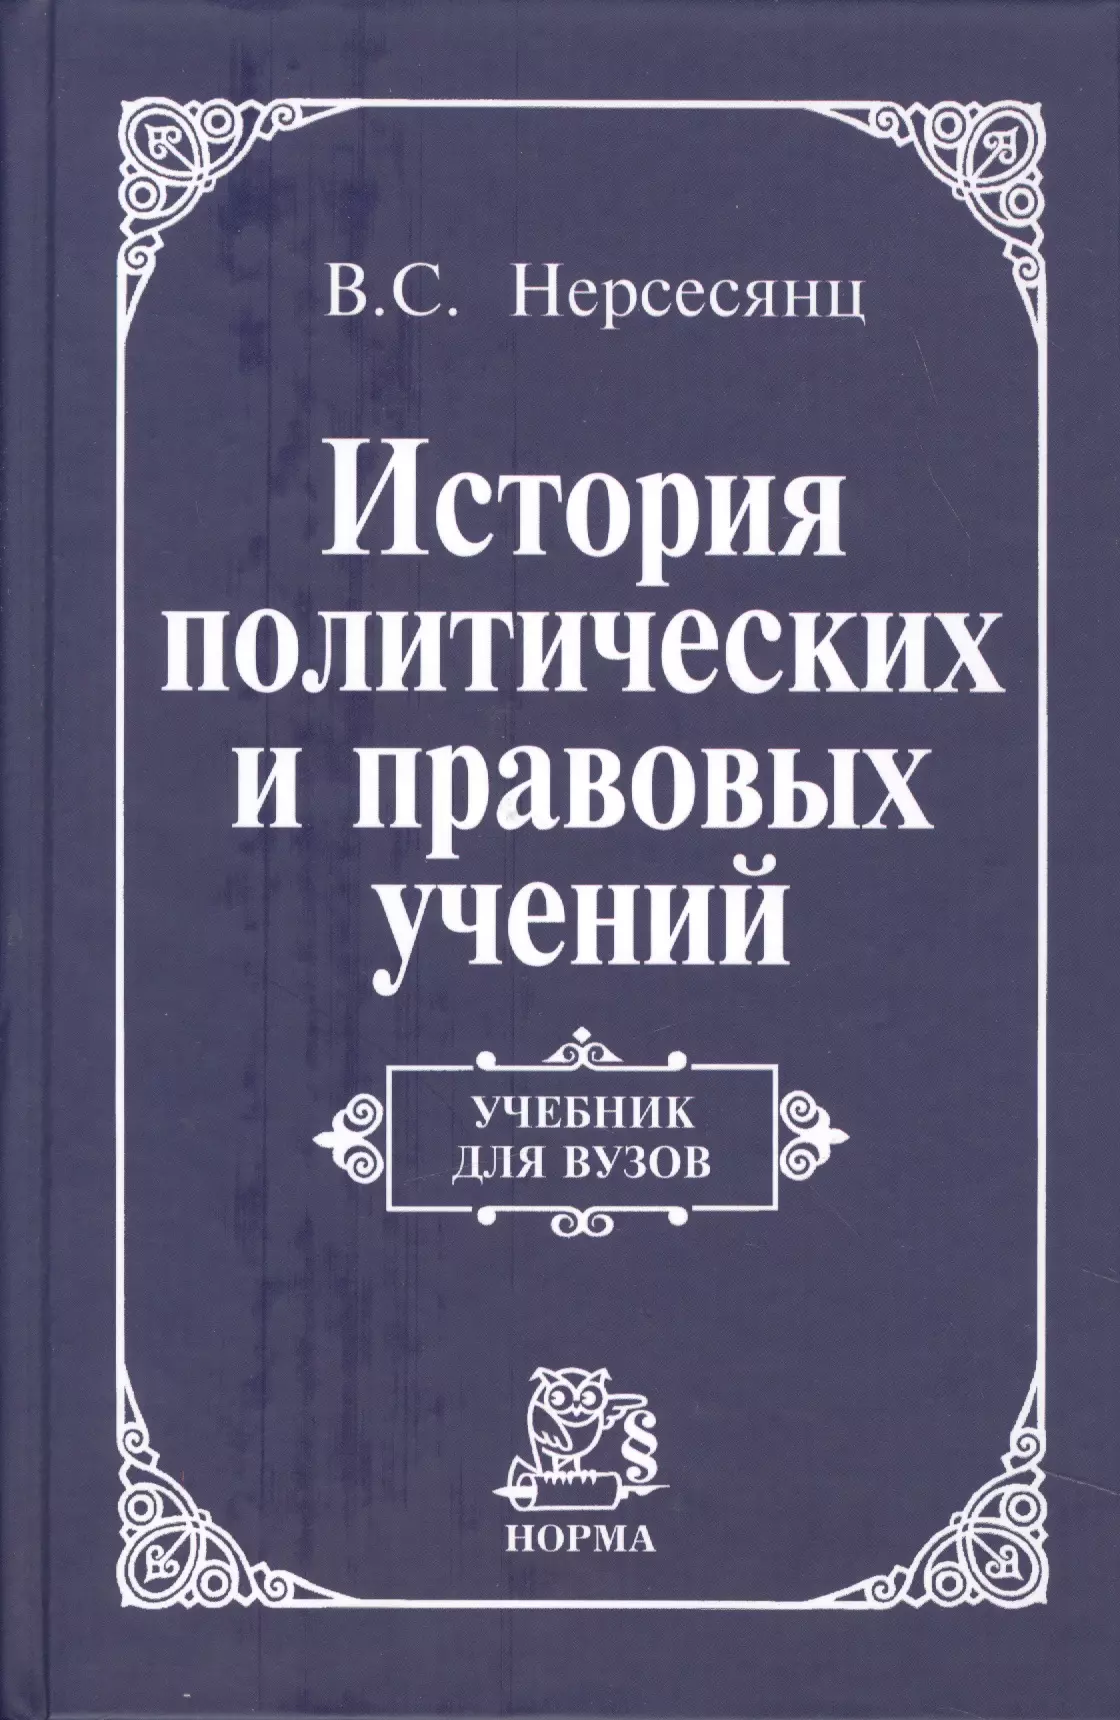 Нерсесянц Владик Сумбатович - История политических и правовых учений: Учебник для вузов